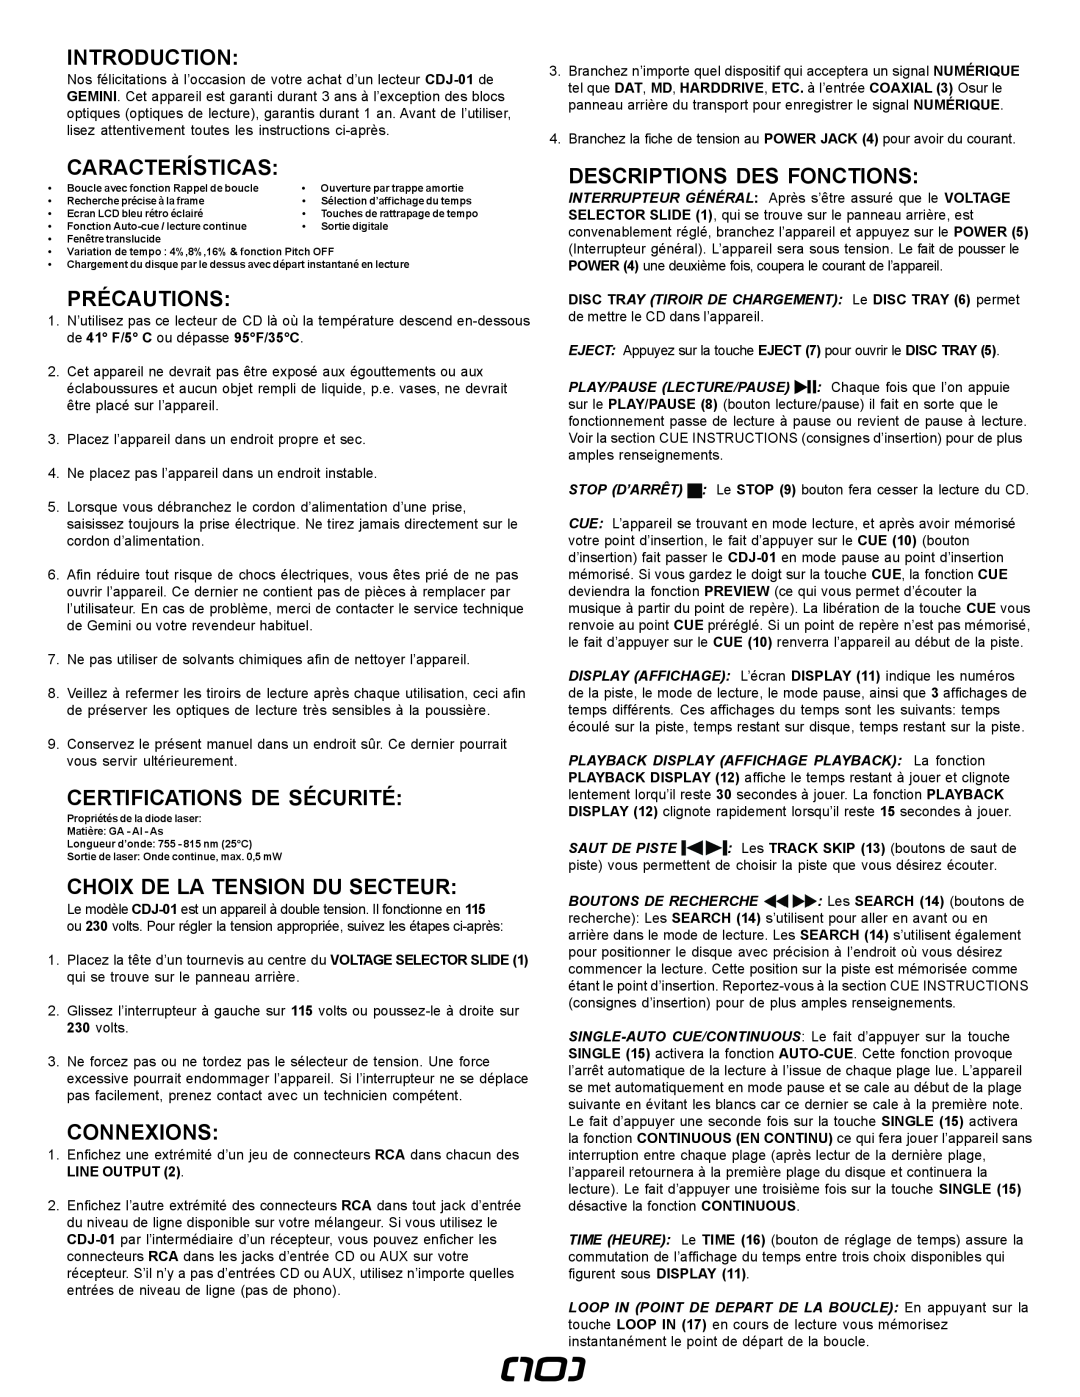 Gemini CDJ-01 manual Précautions, Certifications De Sécurité, Choix De La Tension Du Secteur, Connexions, Introduction 